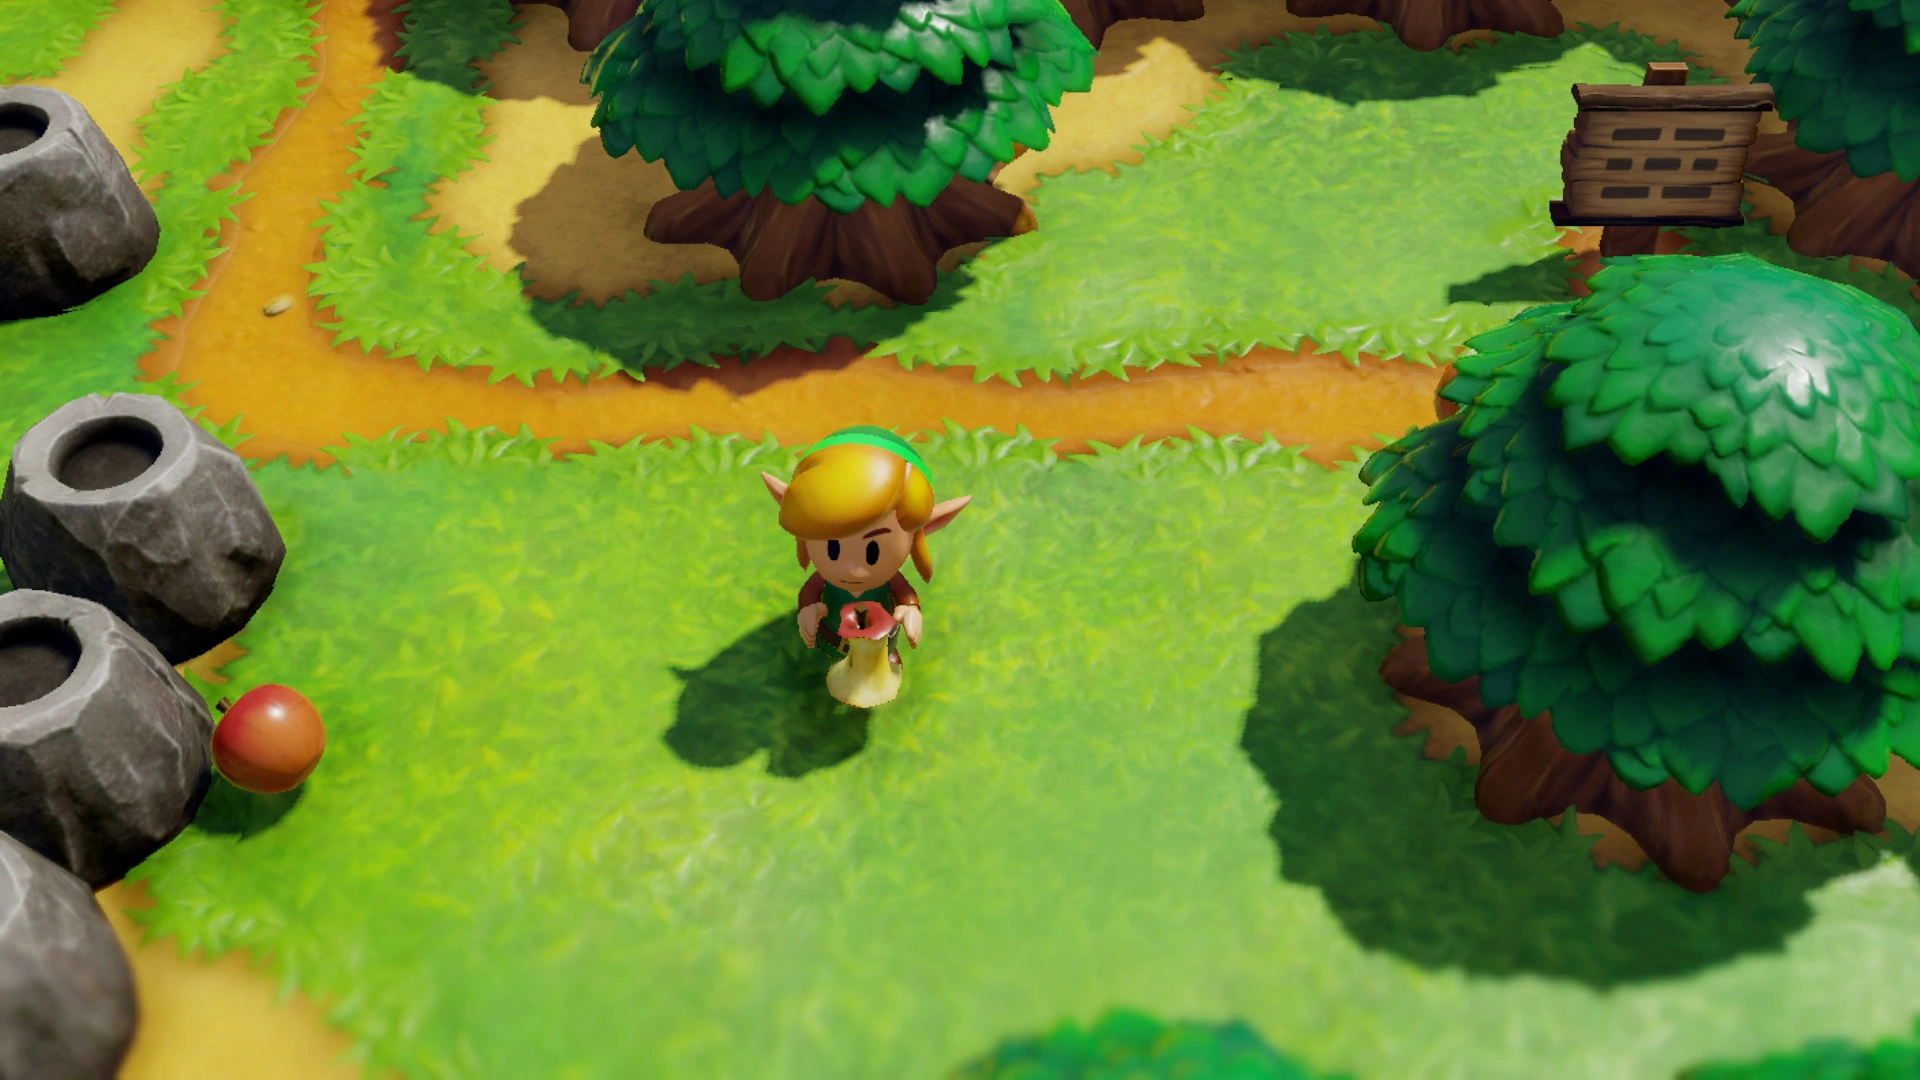 Best switch games: The Legend of Zelda: Link's awakening